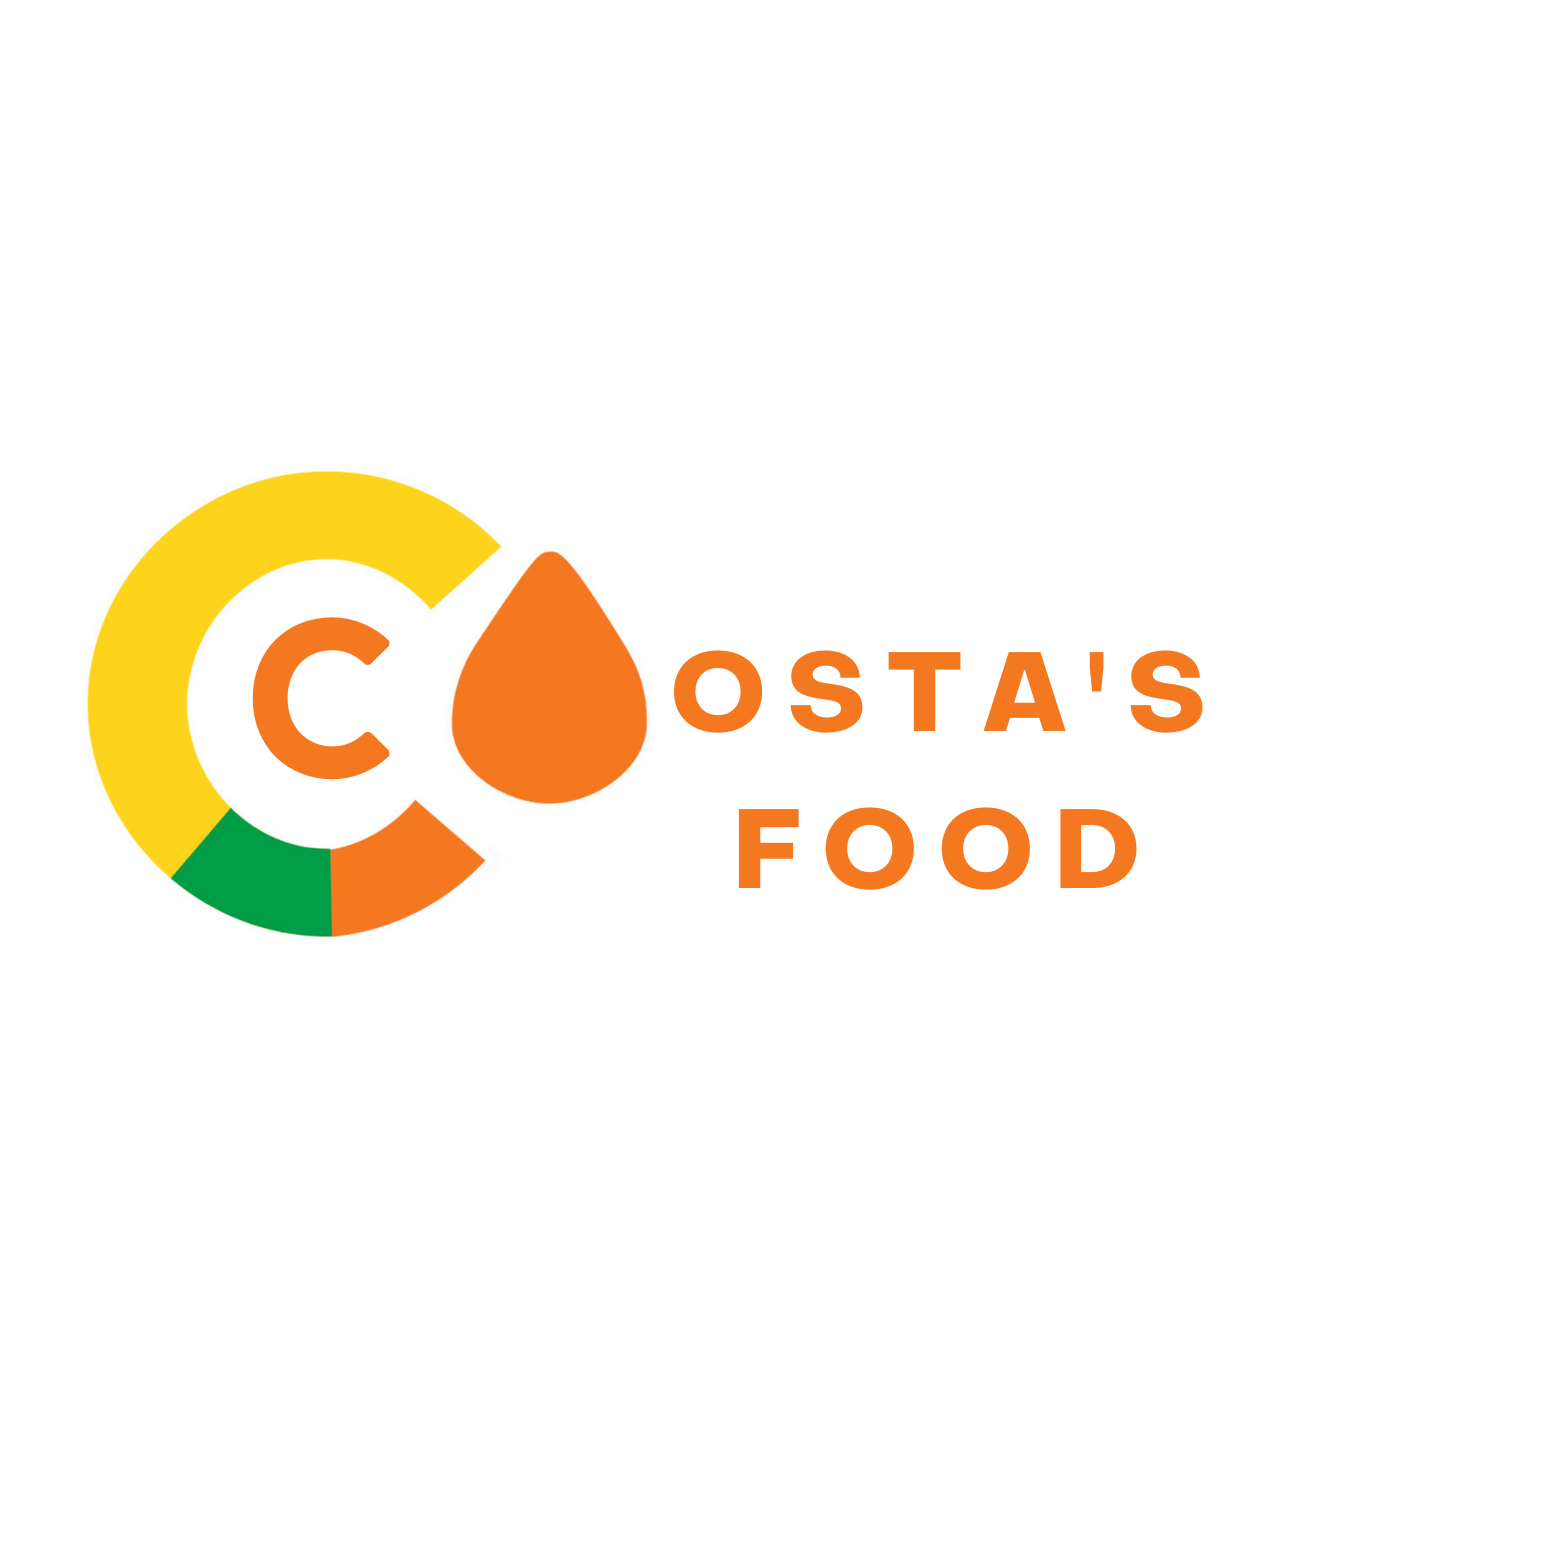 Costasfood